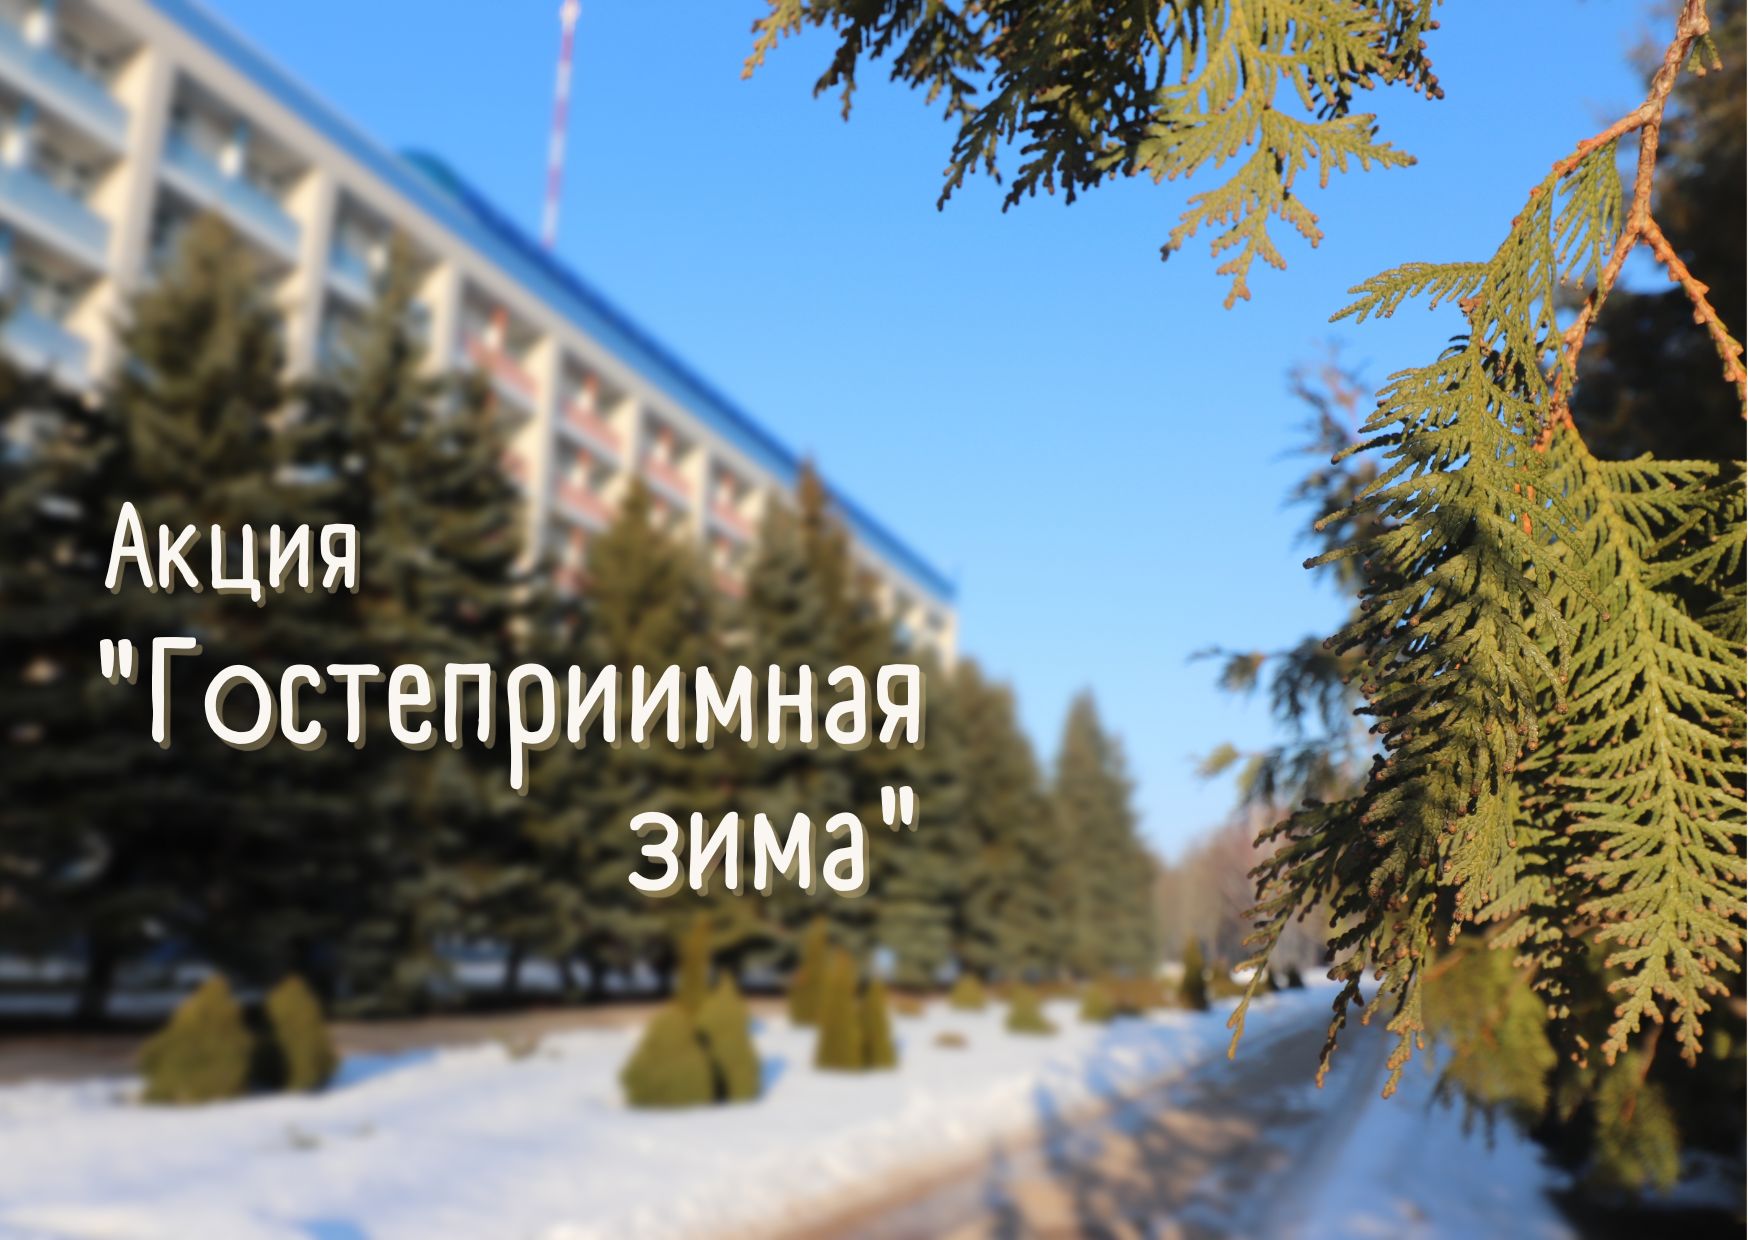 Акция "Гостеприимная зима" для членов профсоюзов РФ